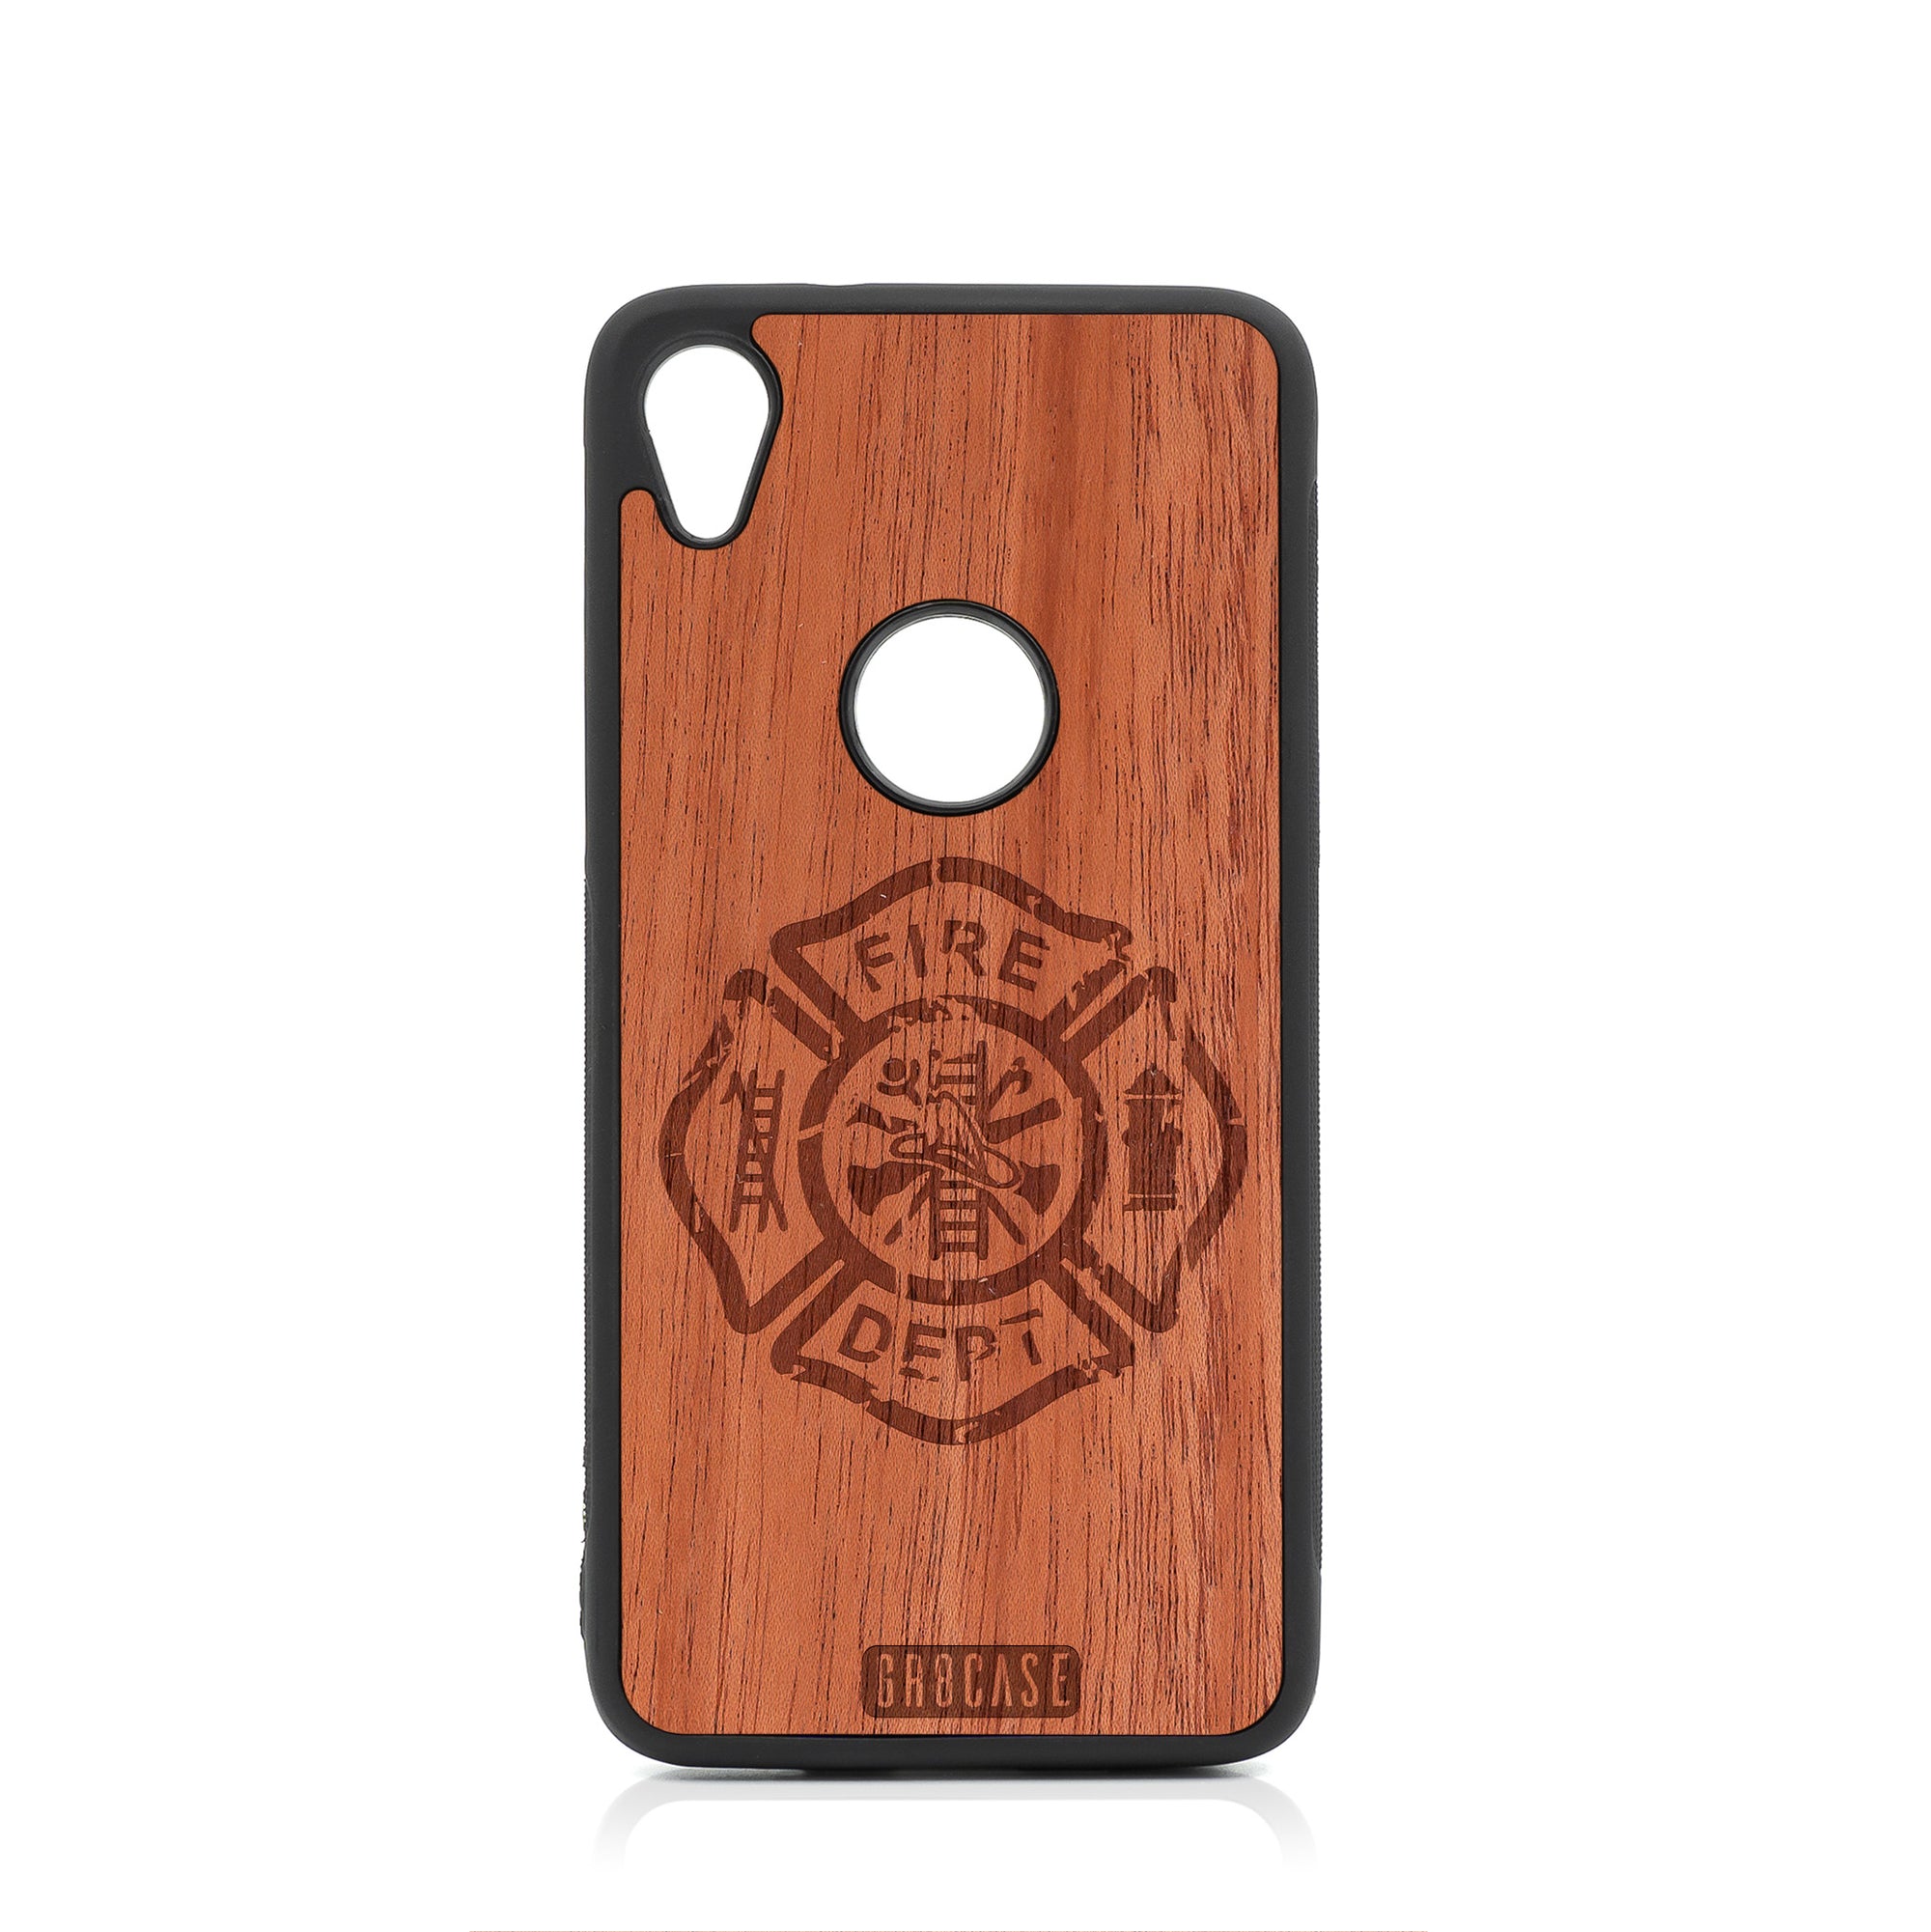 Fire Department Design Wood Case Moto E6 by GR8CASE